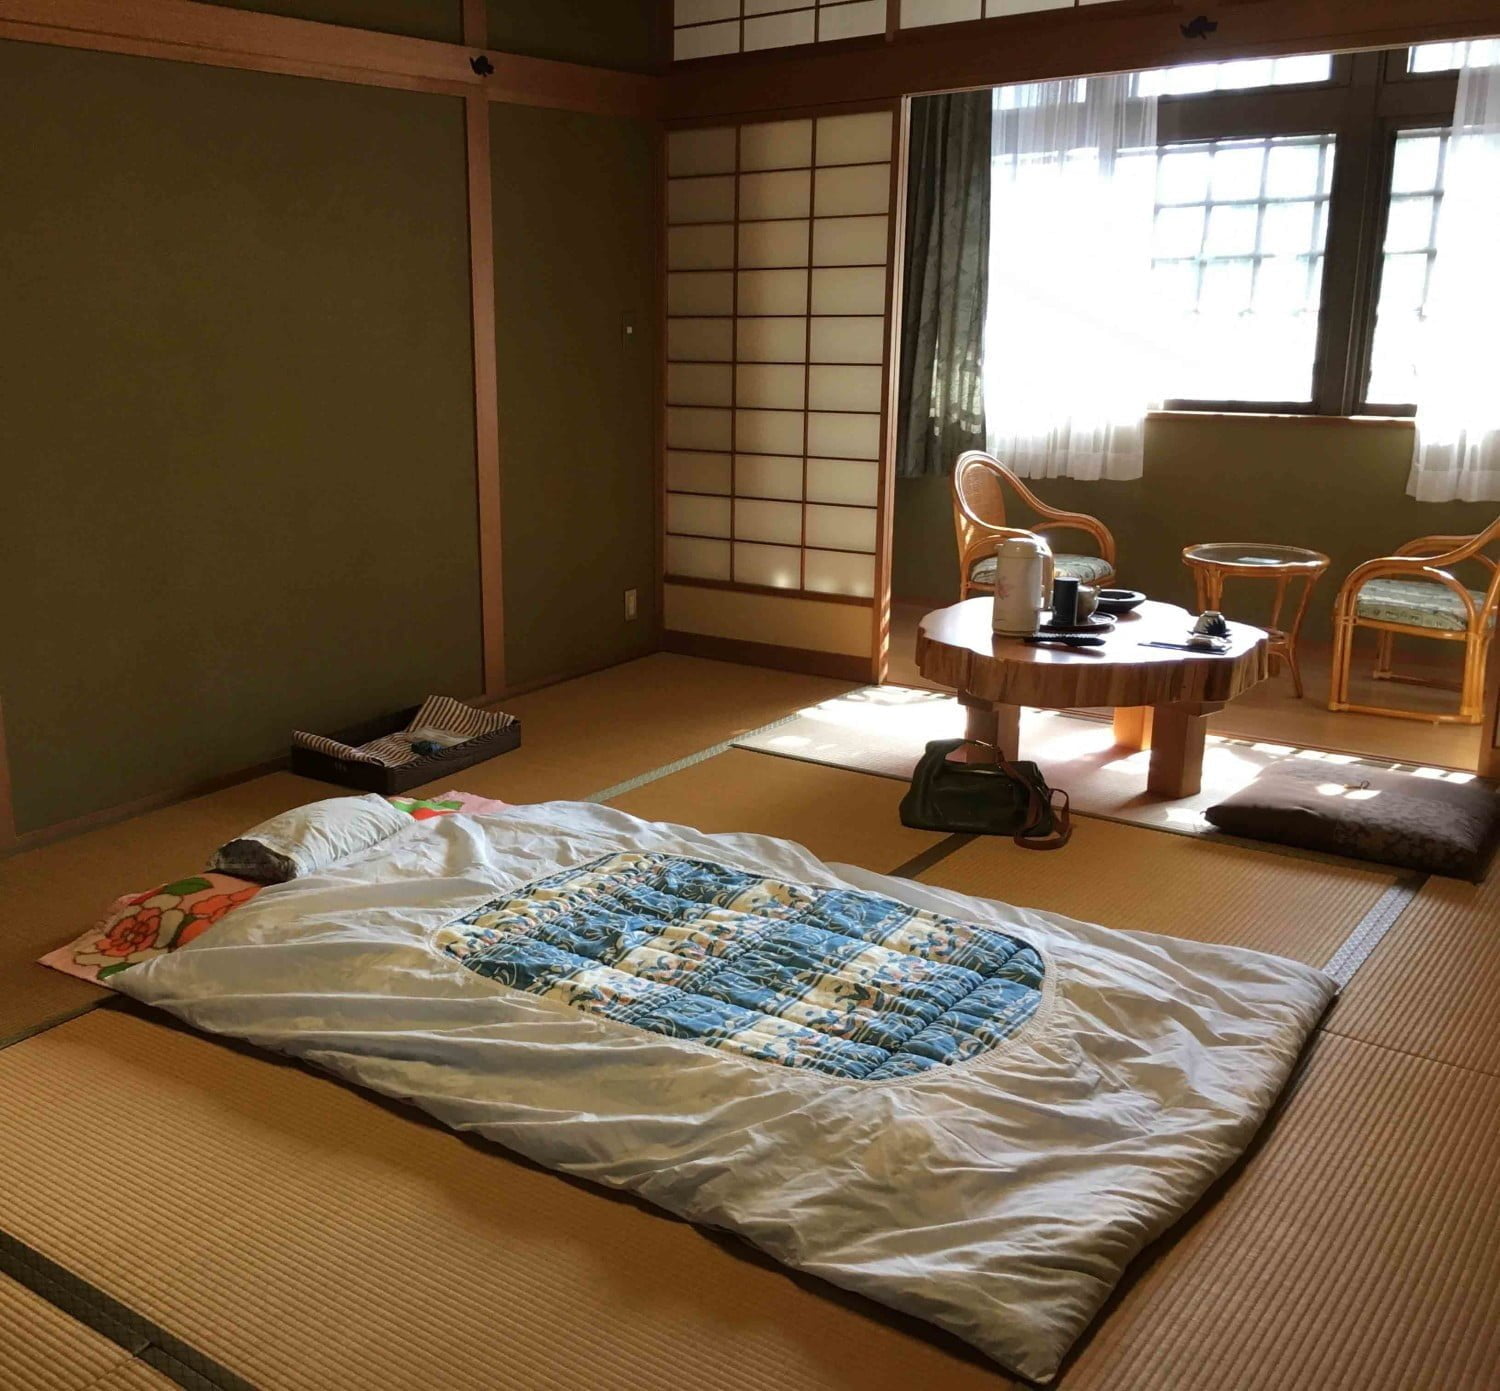 72 Ide Cantik Dekorasi Kamar Tidur Jepang Trend Masa Kini